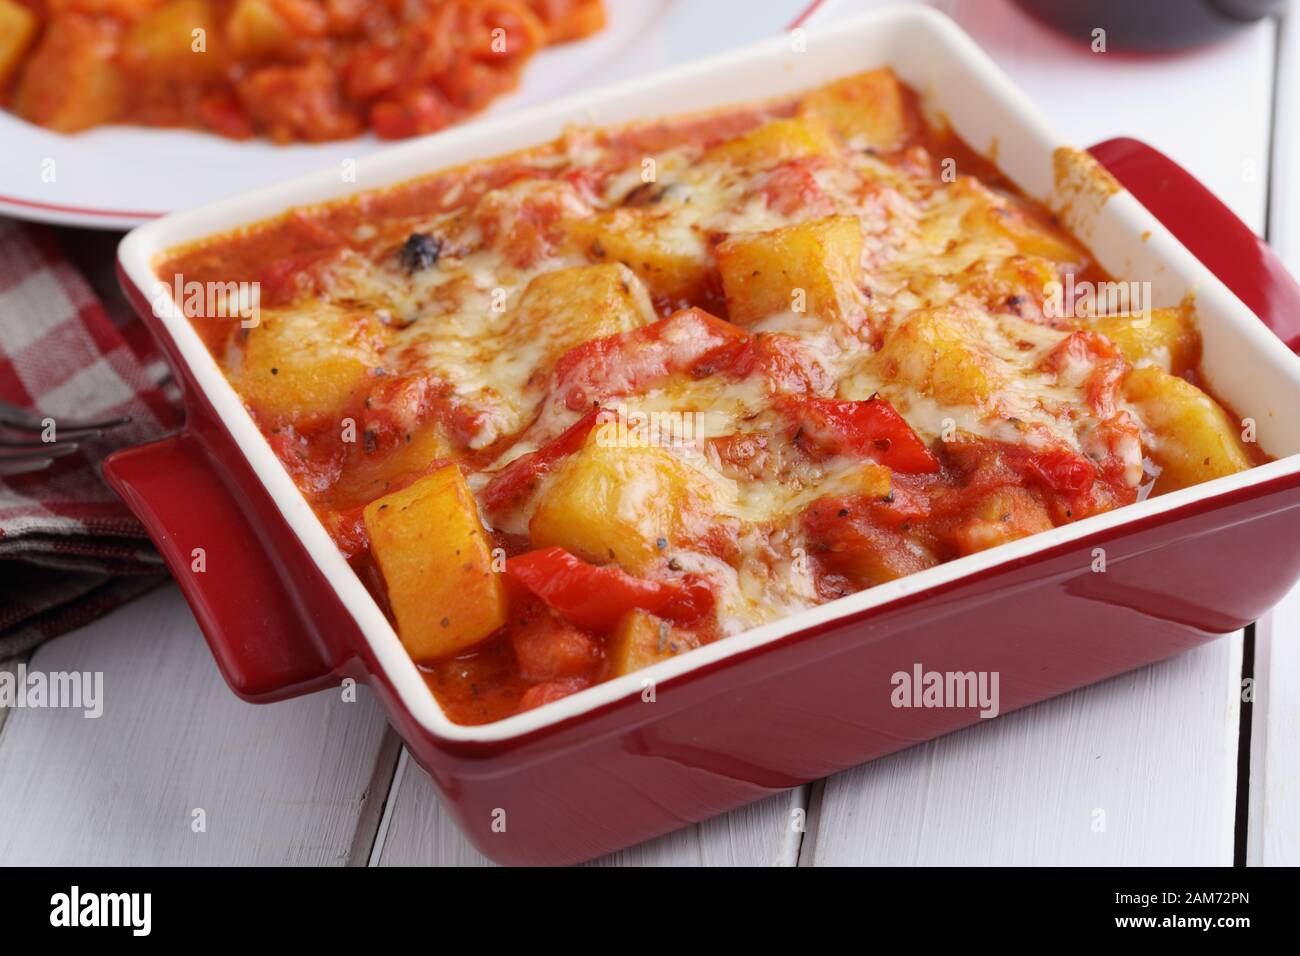 Ragoût végétarien avec pomme de terre, poivron, carotte, et le fromage râpé dans un plat allant au four, sur une table rustique Banque D'Images